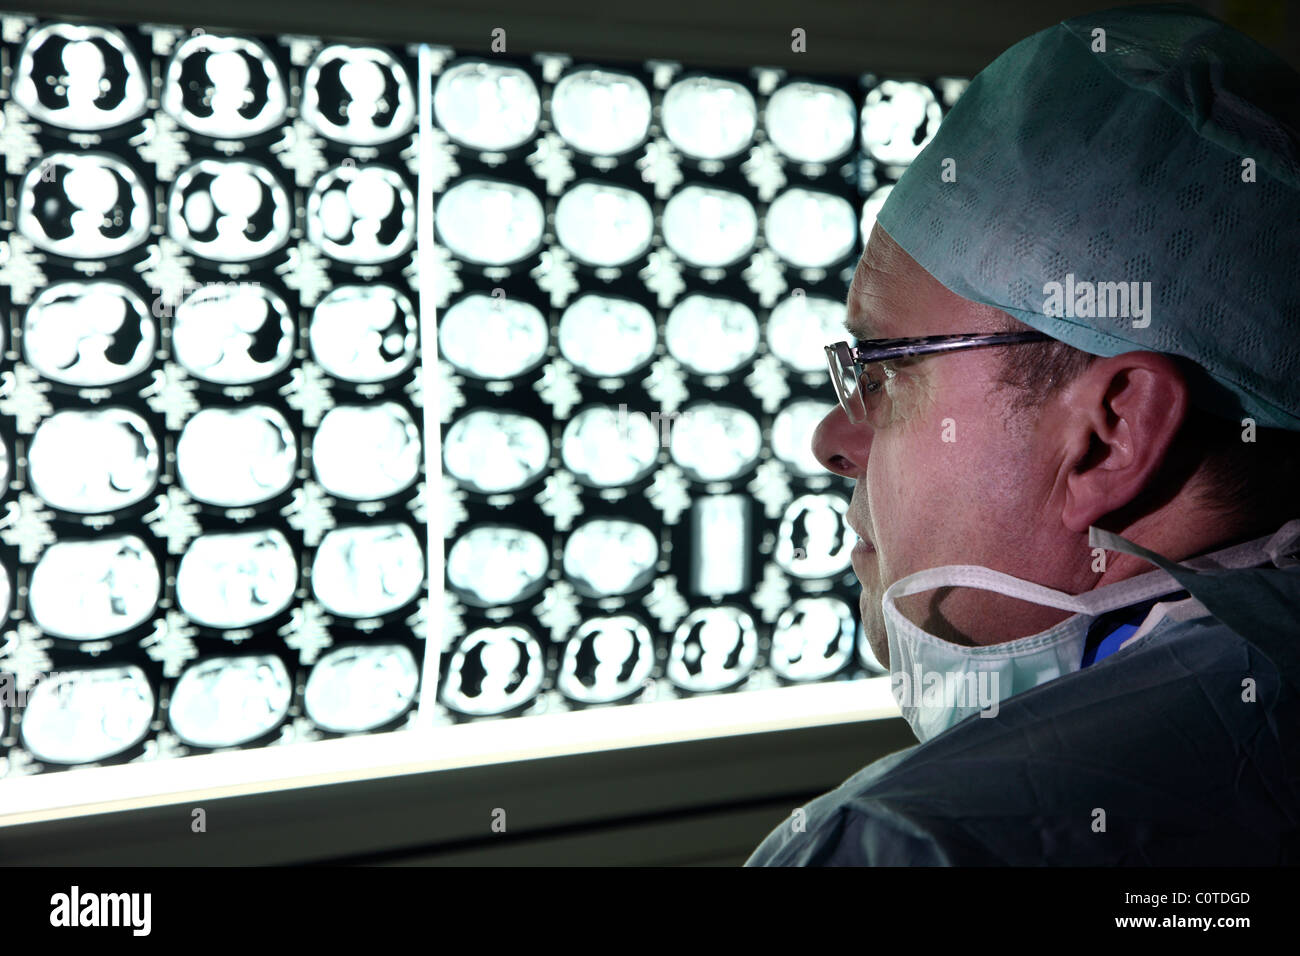 Radiologe, Arzt in einem Krankenhaus befasst sich mit CT-Aufnahmen eines Patienten. Stockfoto